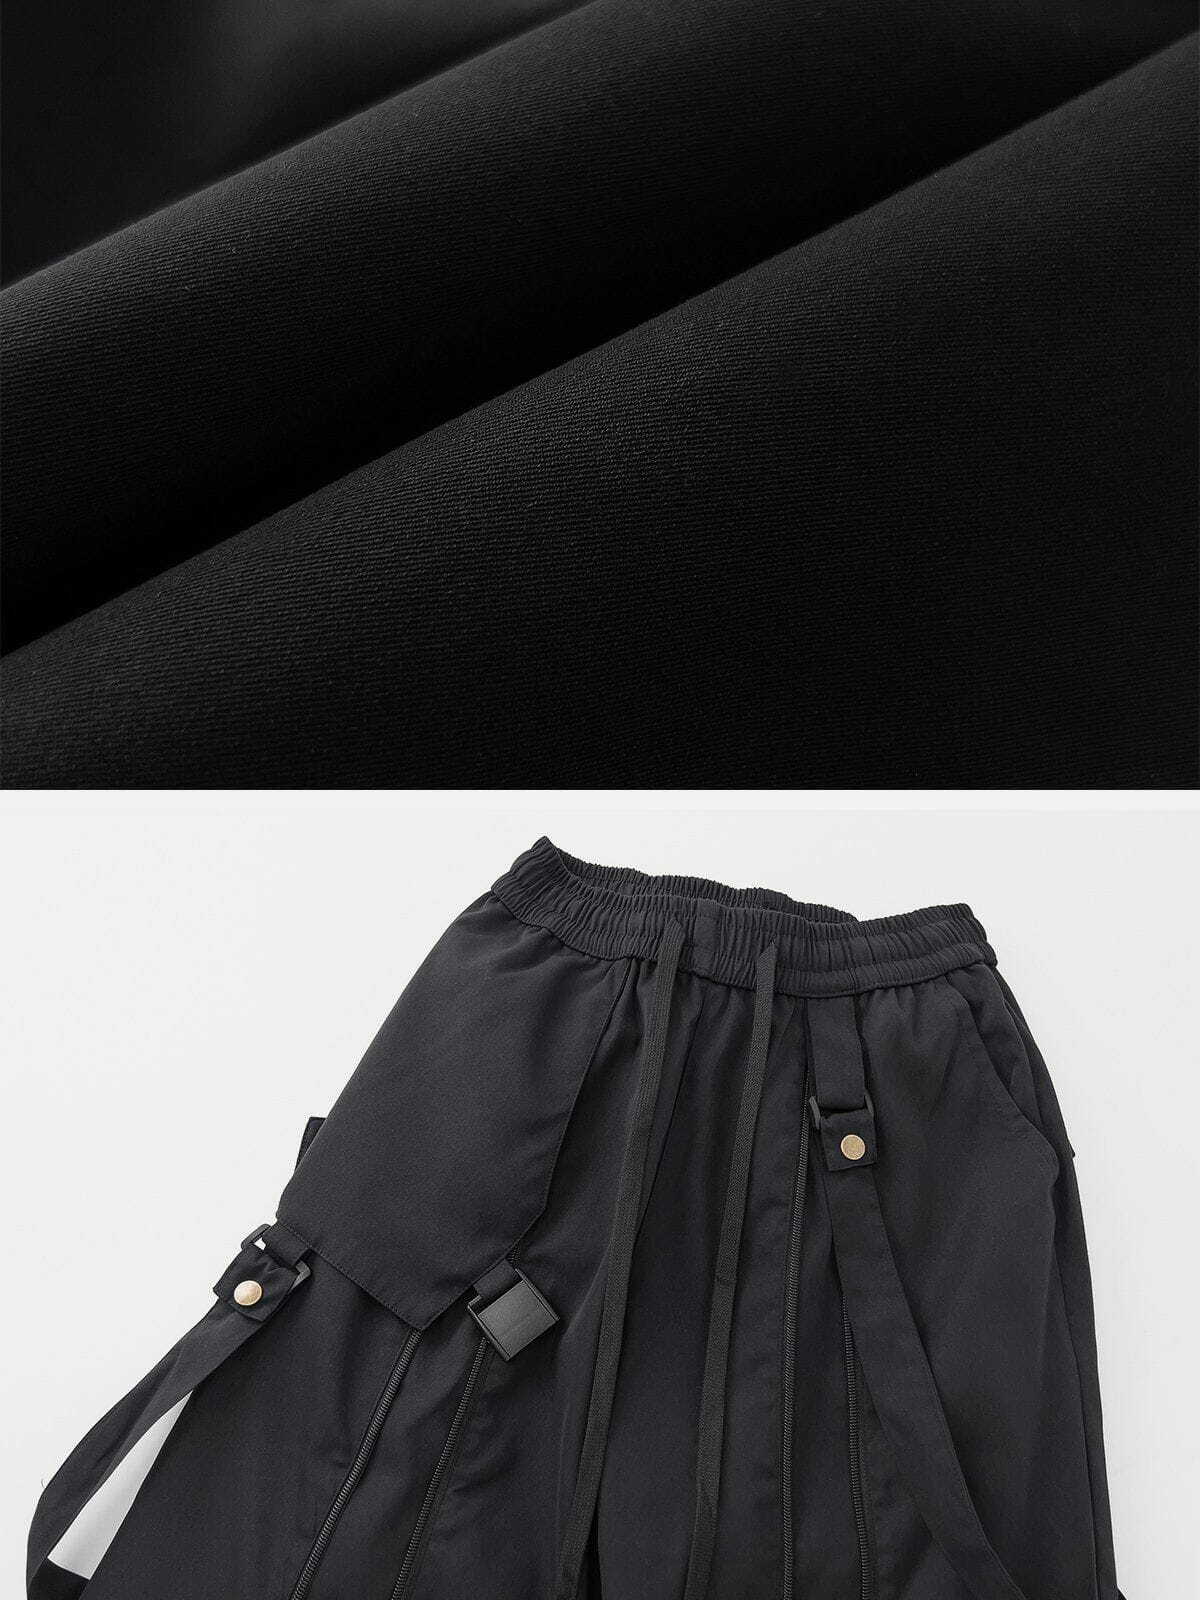 waterproof patchwork pants edgy & innovative streetwear 1801